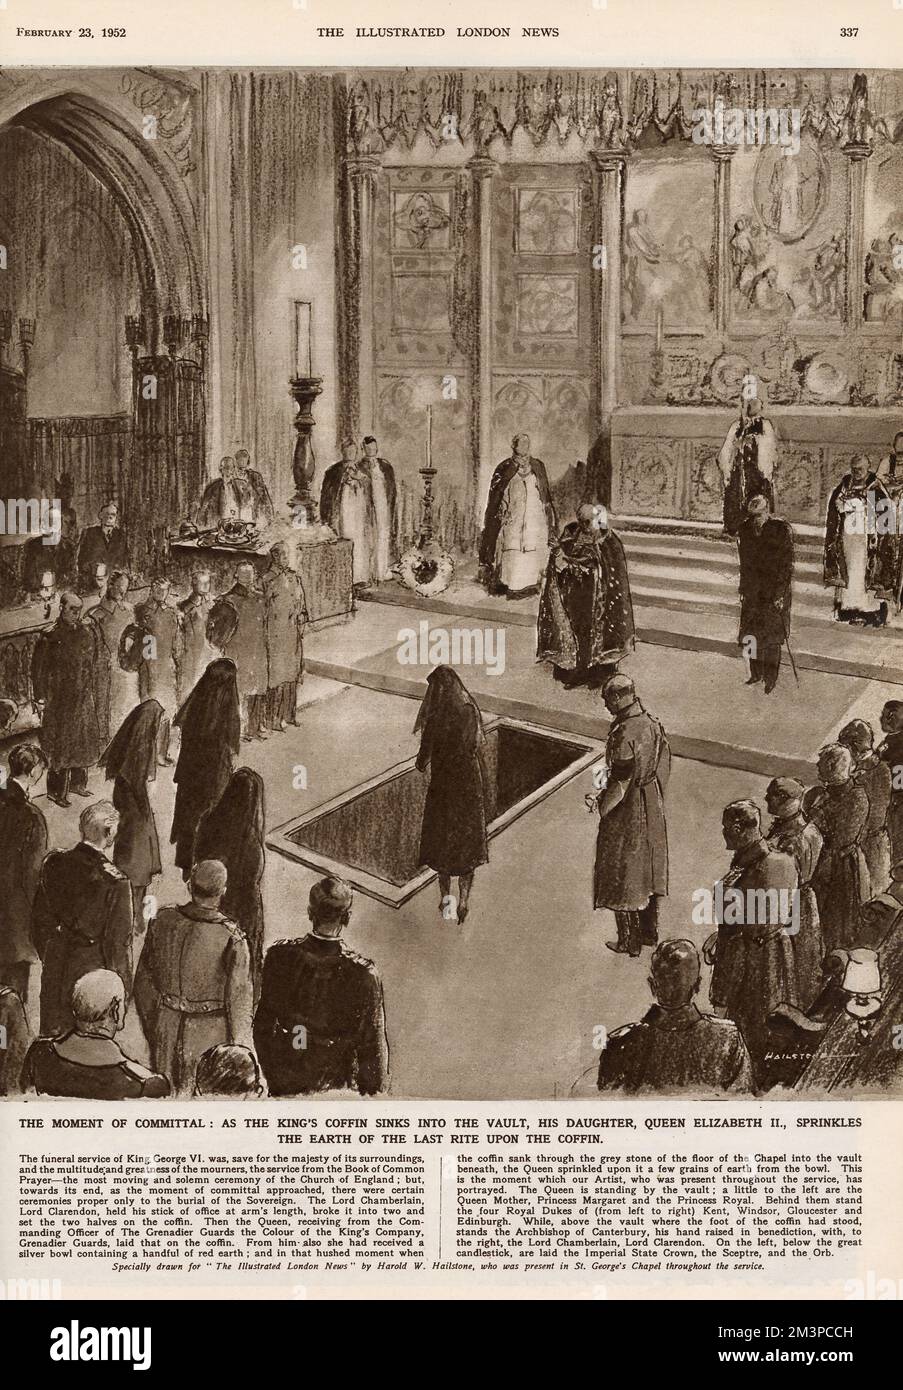 Der Moment der Einberufung in der St. George's Chapel, Windsor: Als König George VI. Sarg in den Tresor sinkt, streut seine Tochter, Königin Elizabeth II., die Erde des letzten Rituals auf den Sarg. Datum: Februar 1952 Stockfoto